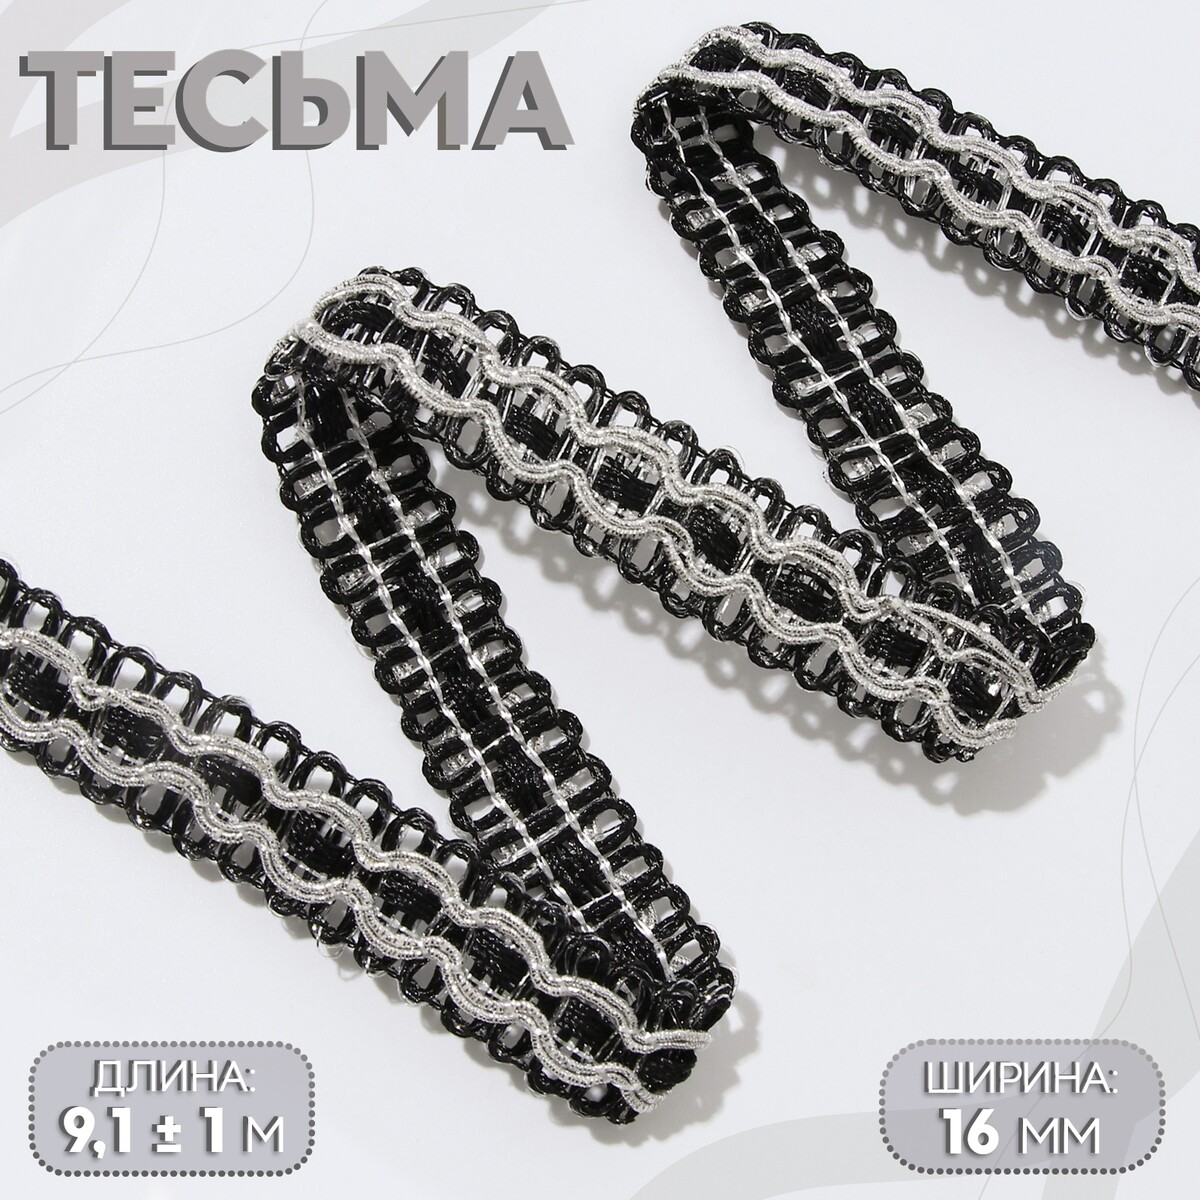 Тесьма декоративная, 16 мм, 9,1 ± 1 м, цвет черный/серебряный тесьма декоративная металлизированная 10 ± 1 м 20 мм серебряный